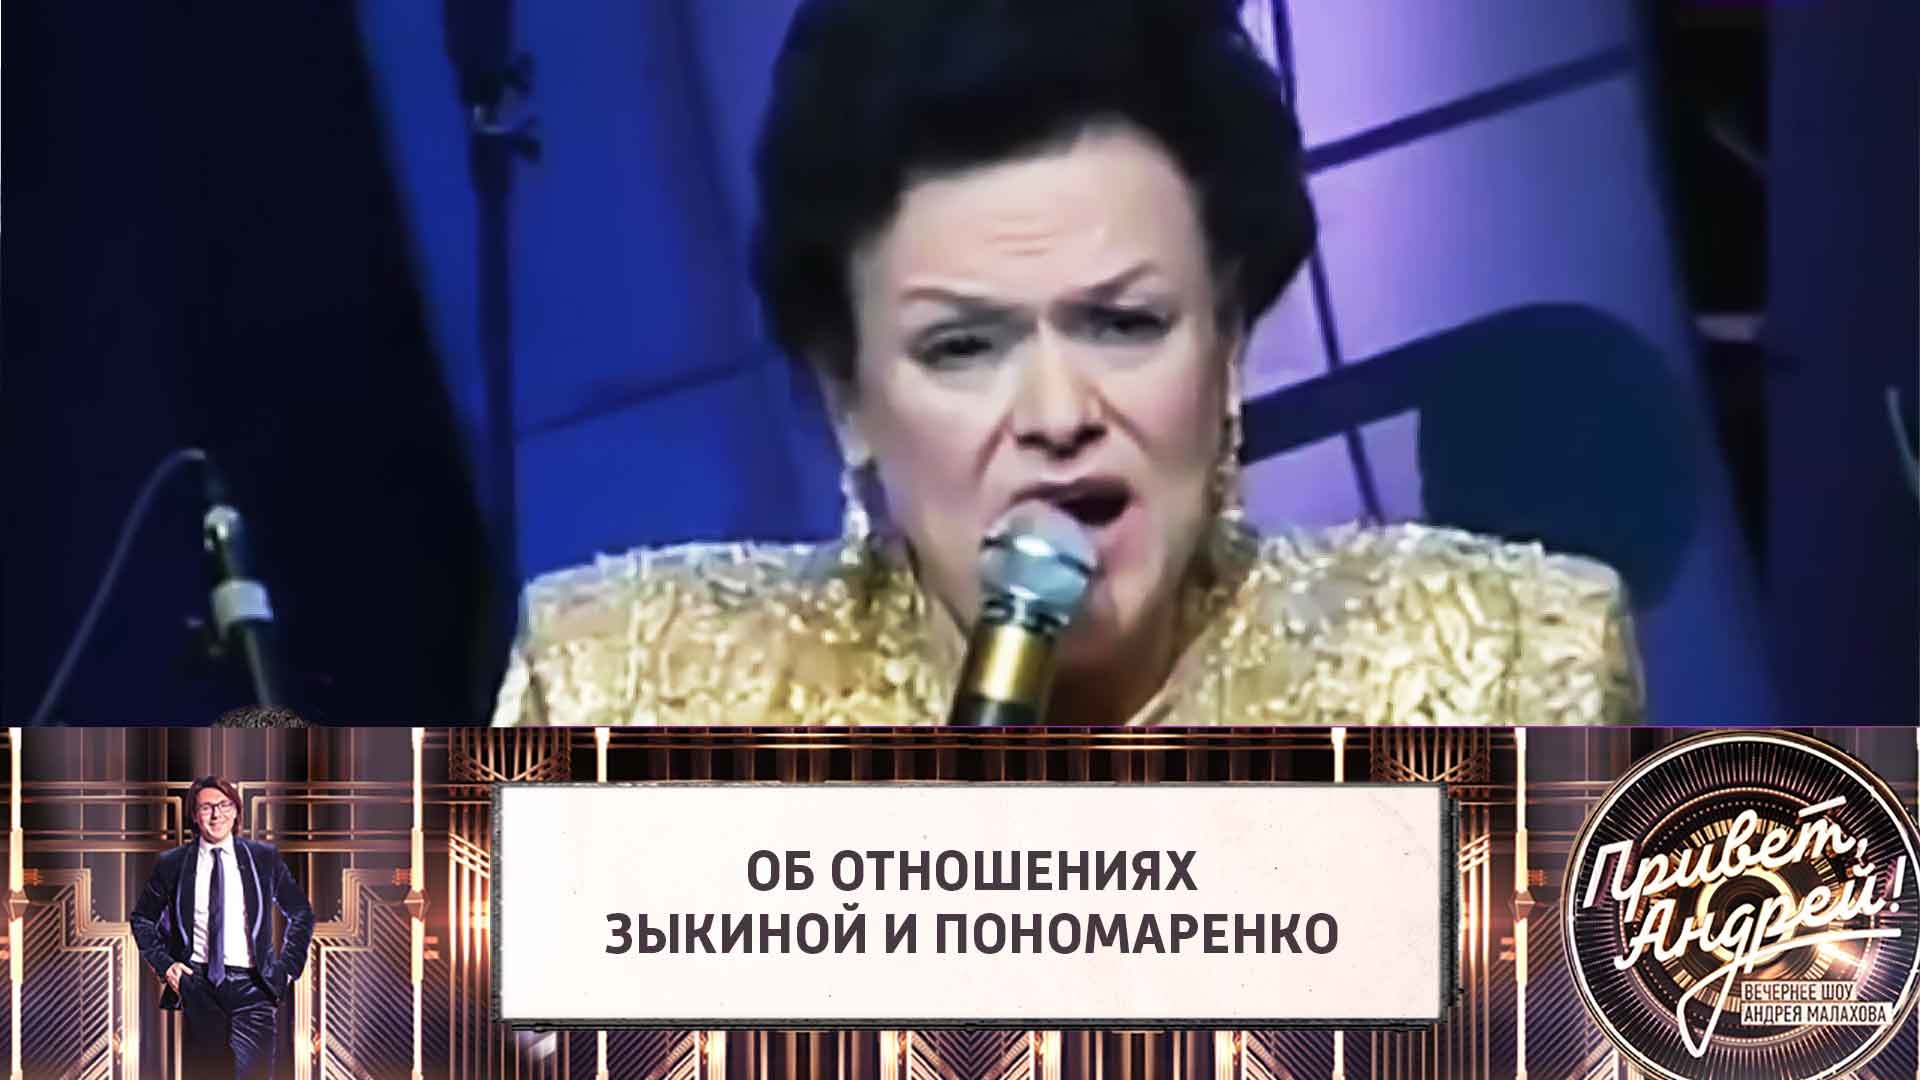 Вера Ивановна Пономаренко